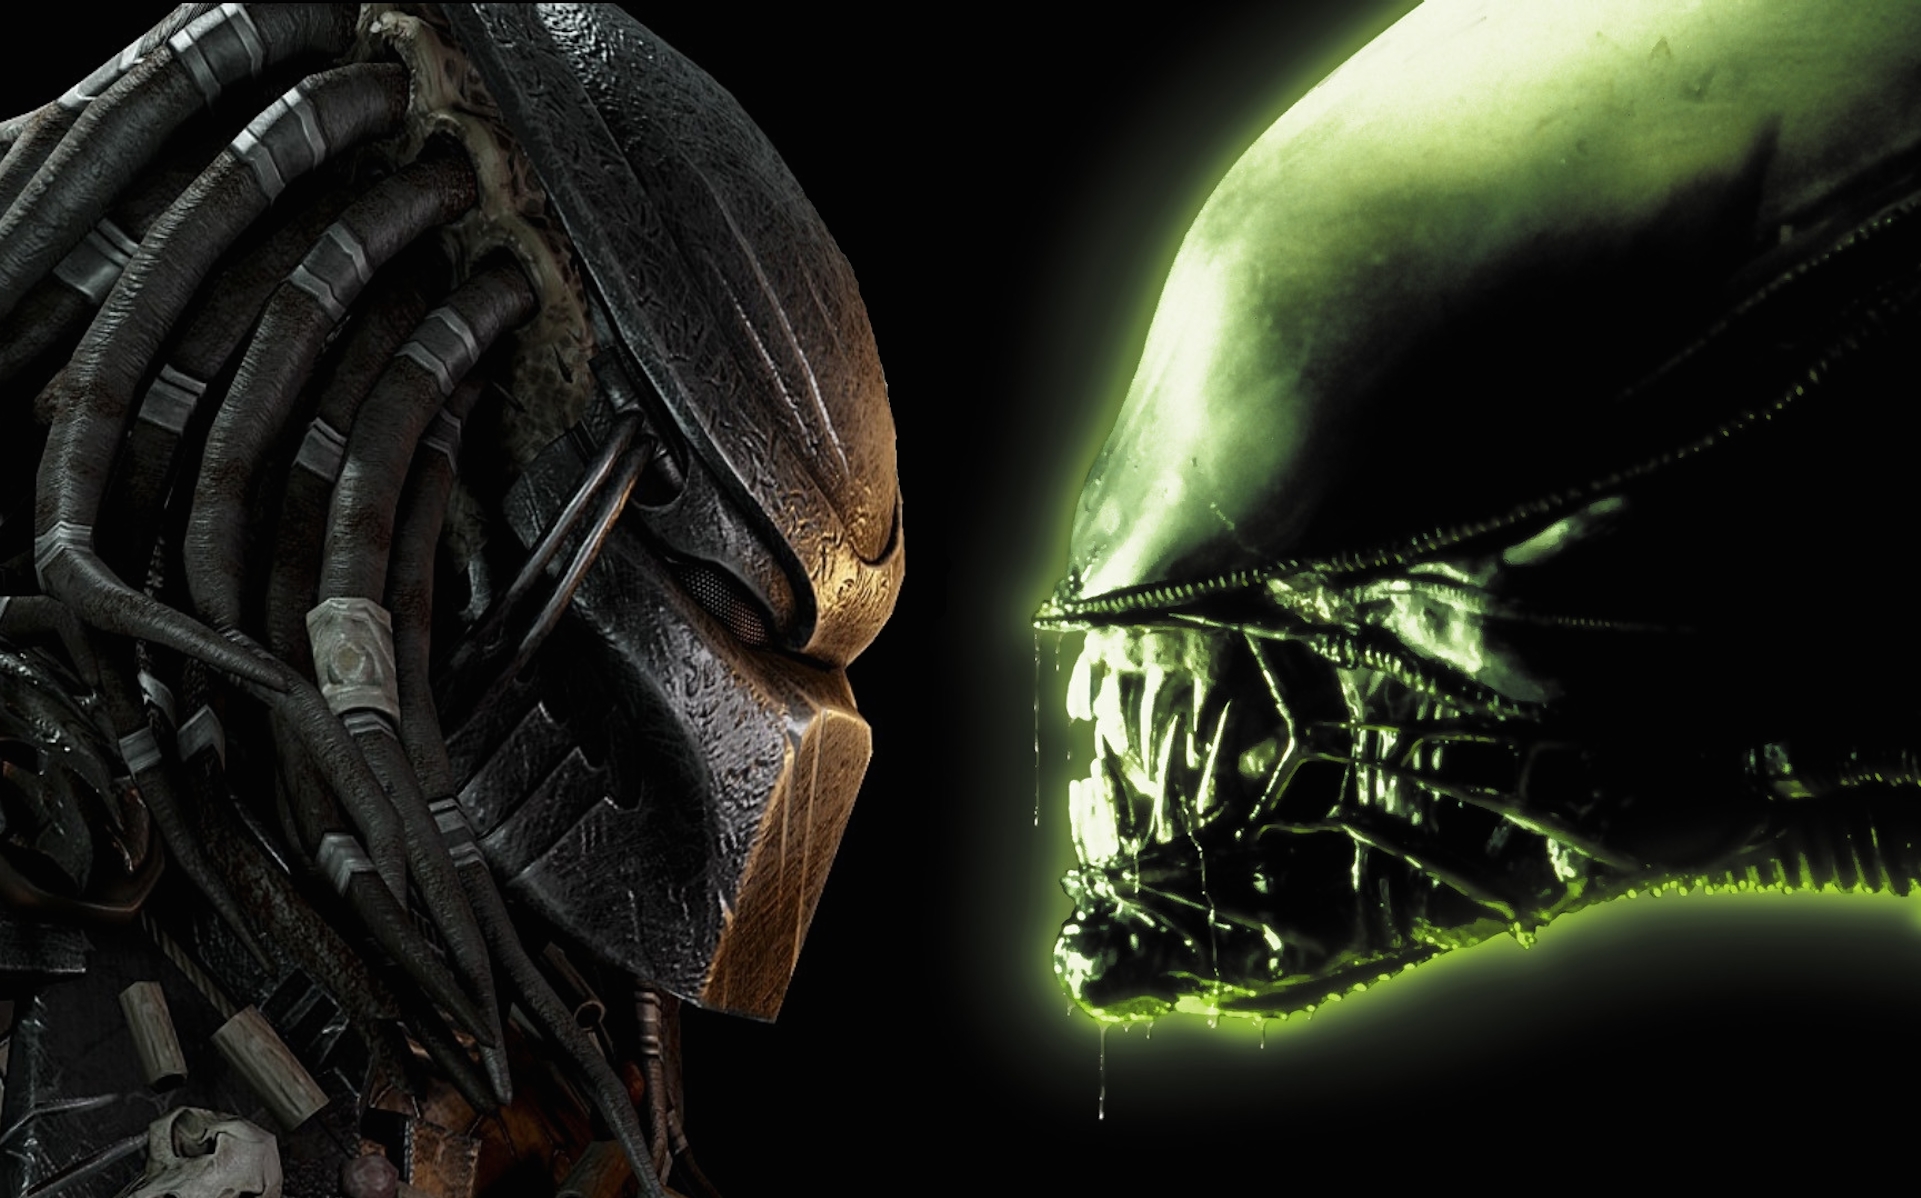 download alien vs predator part 2